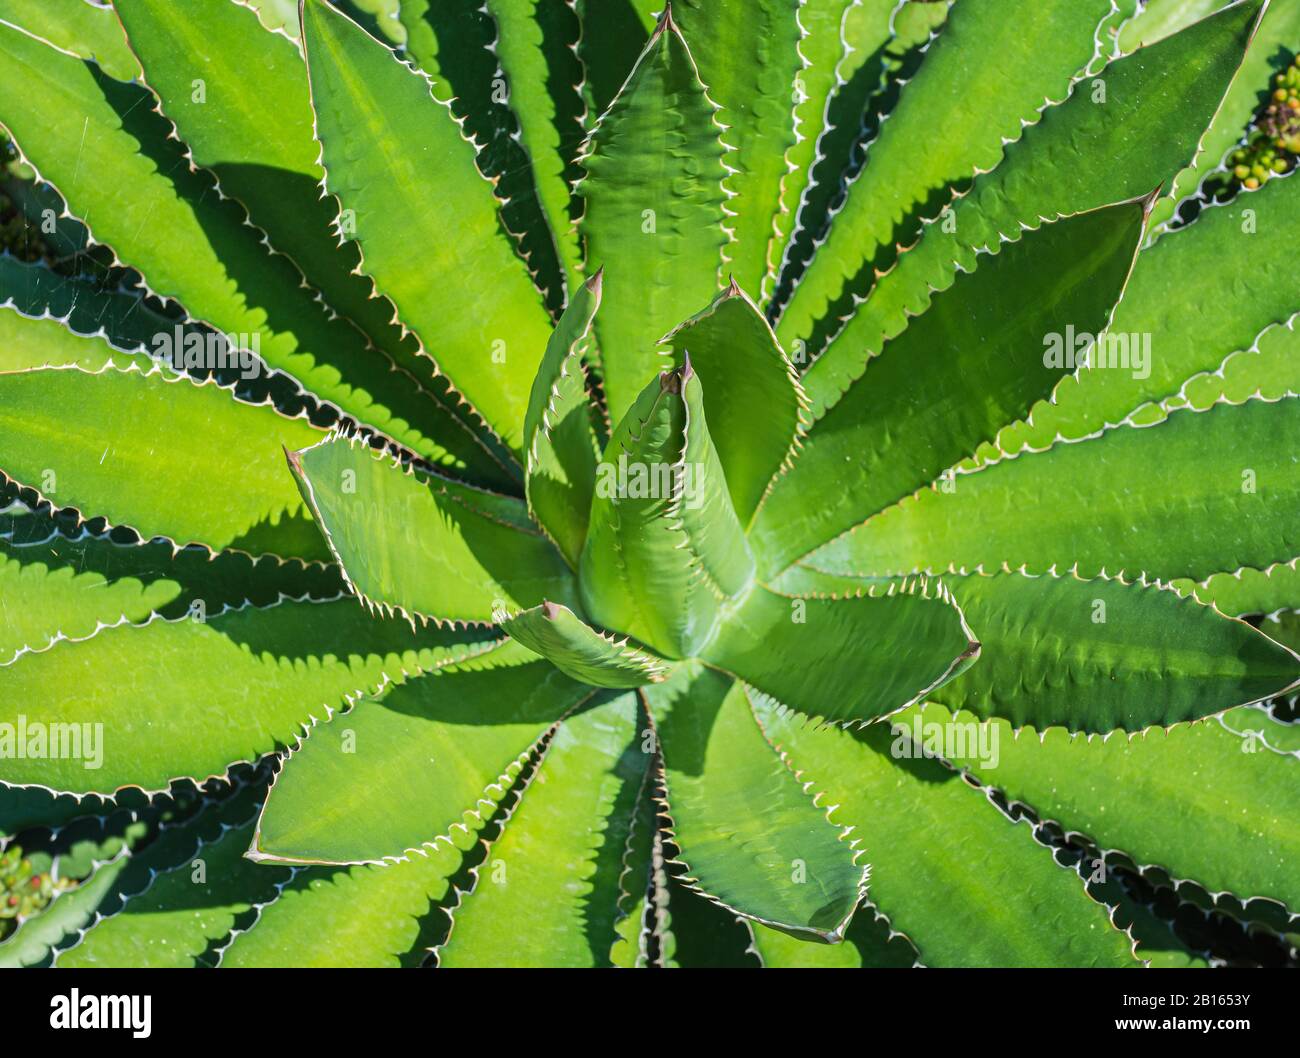 Agave lophantha. Usine Succulente. Agave univittata, la plante du siècle à l'aupine, est une espèce végétale indigène des zones côtières du sud du Texas. Banque D'Images